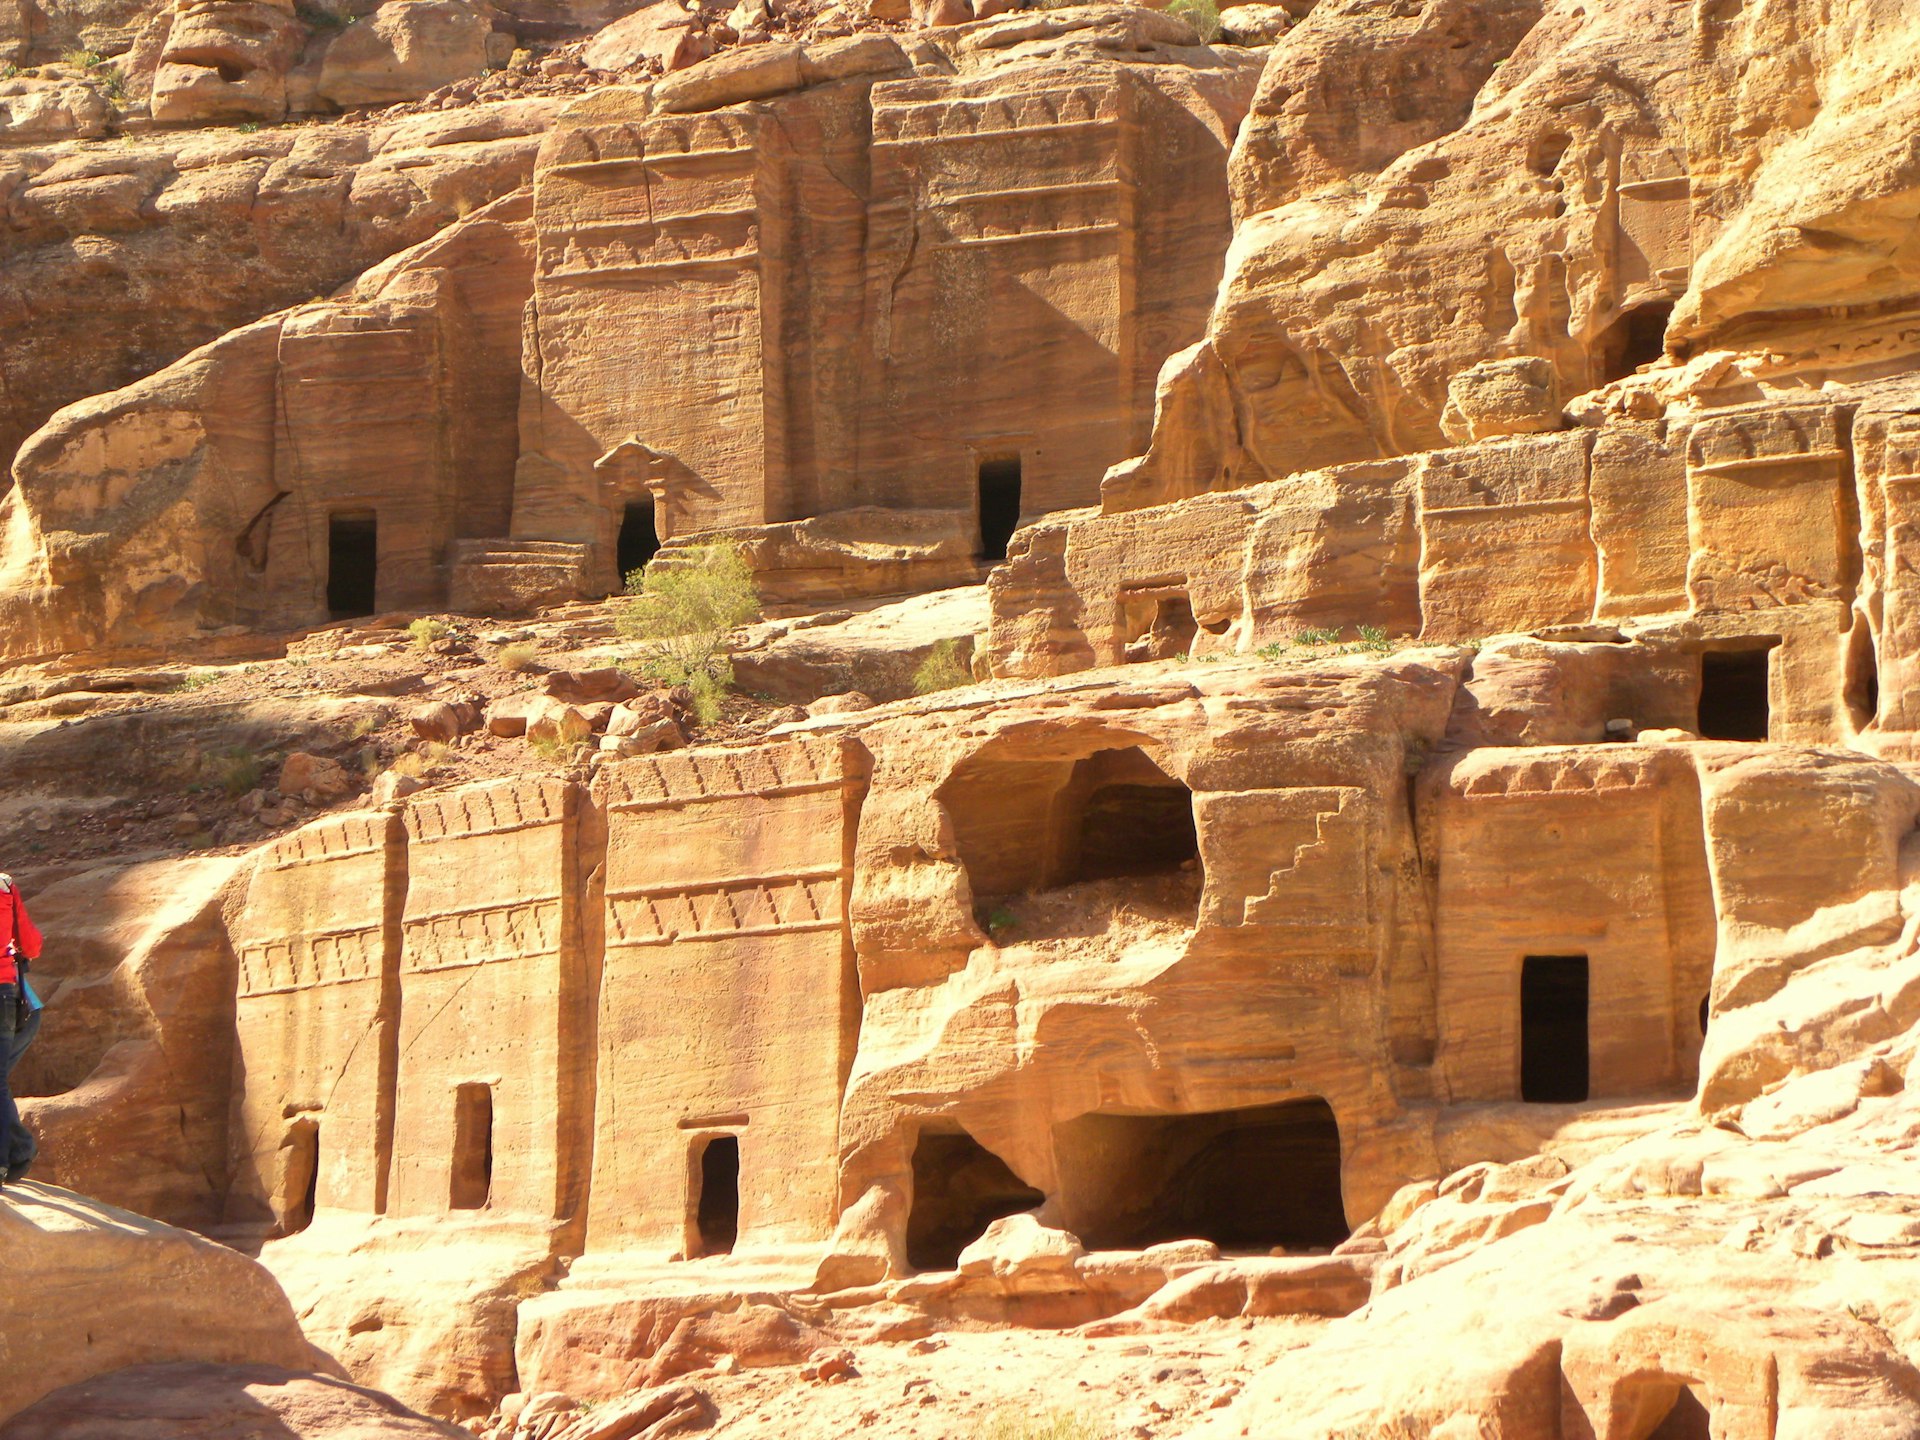 Commoners tombs at Petra, Jordan